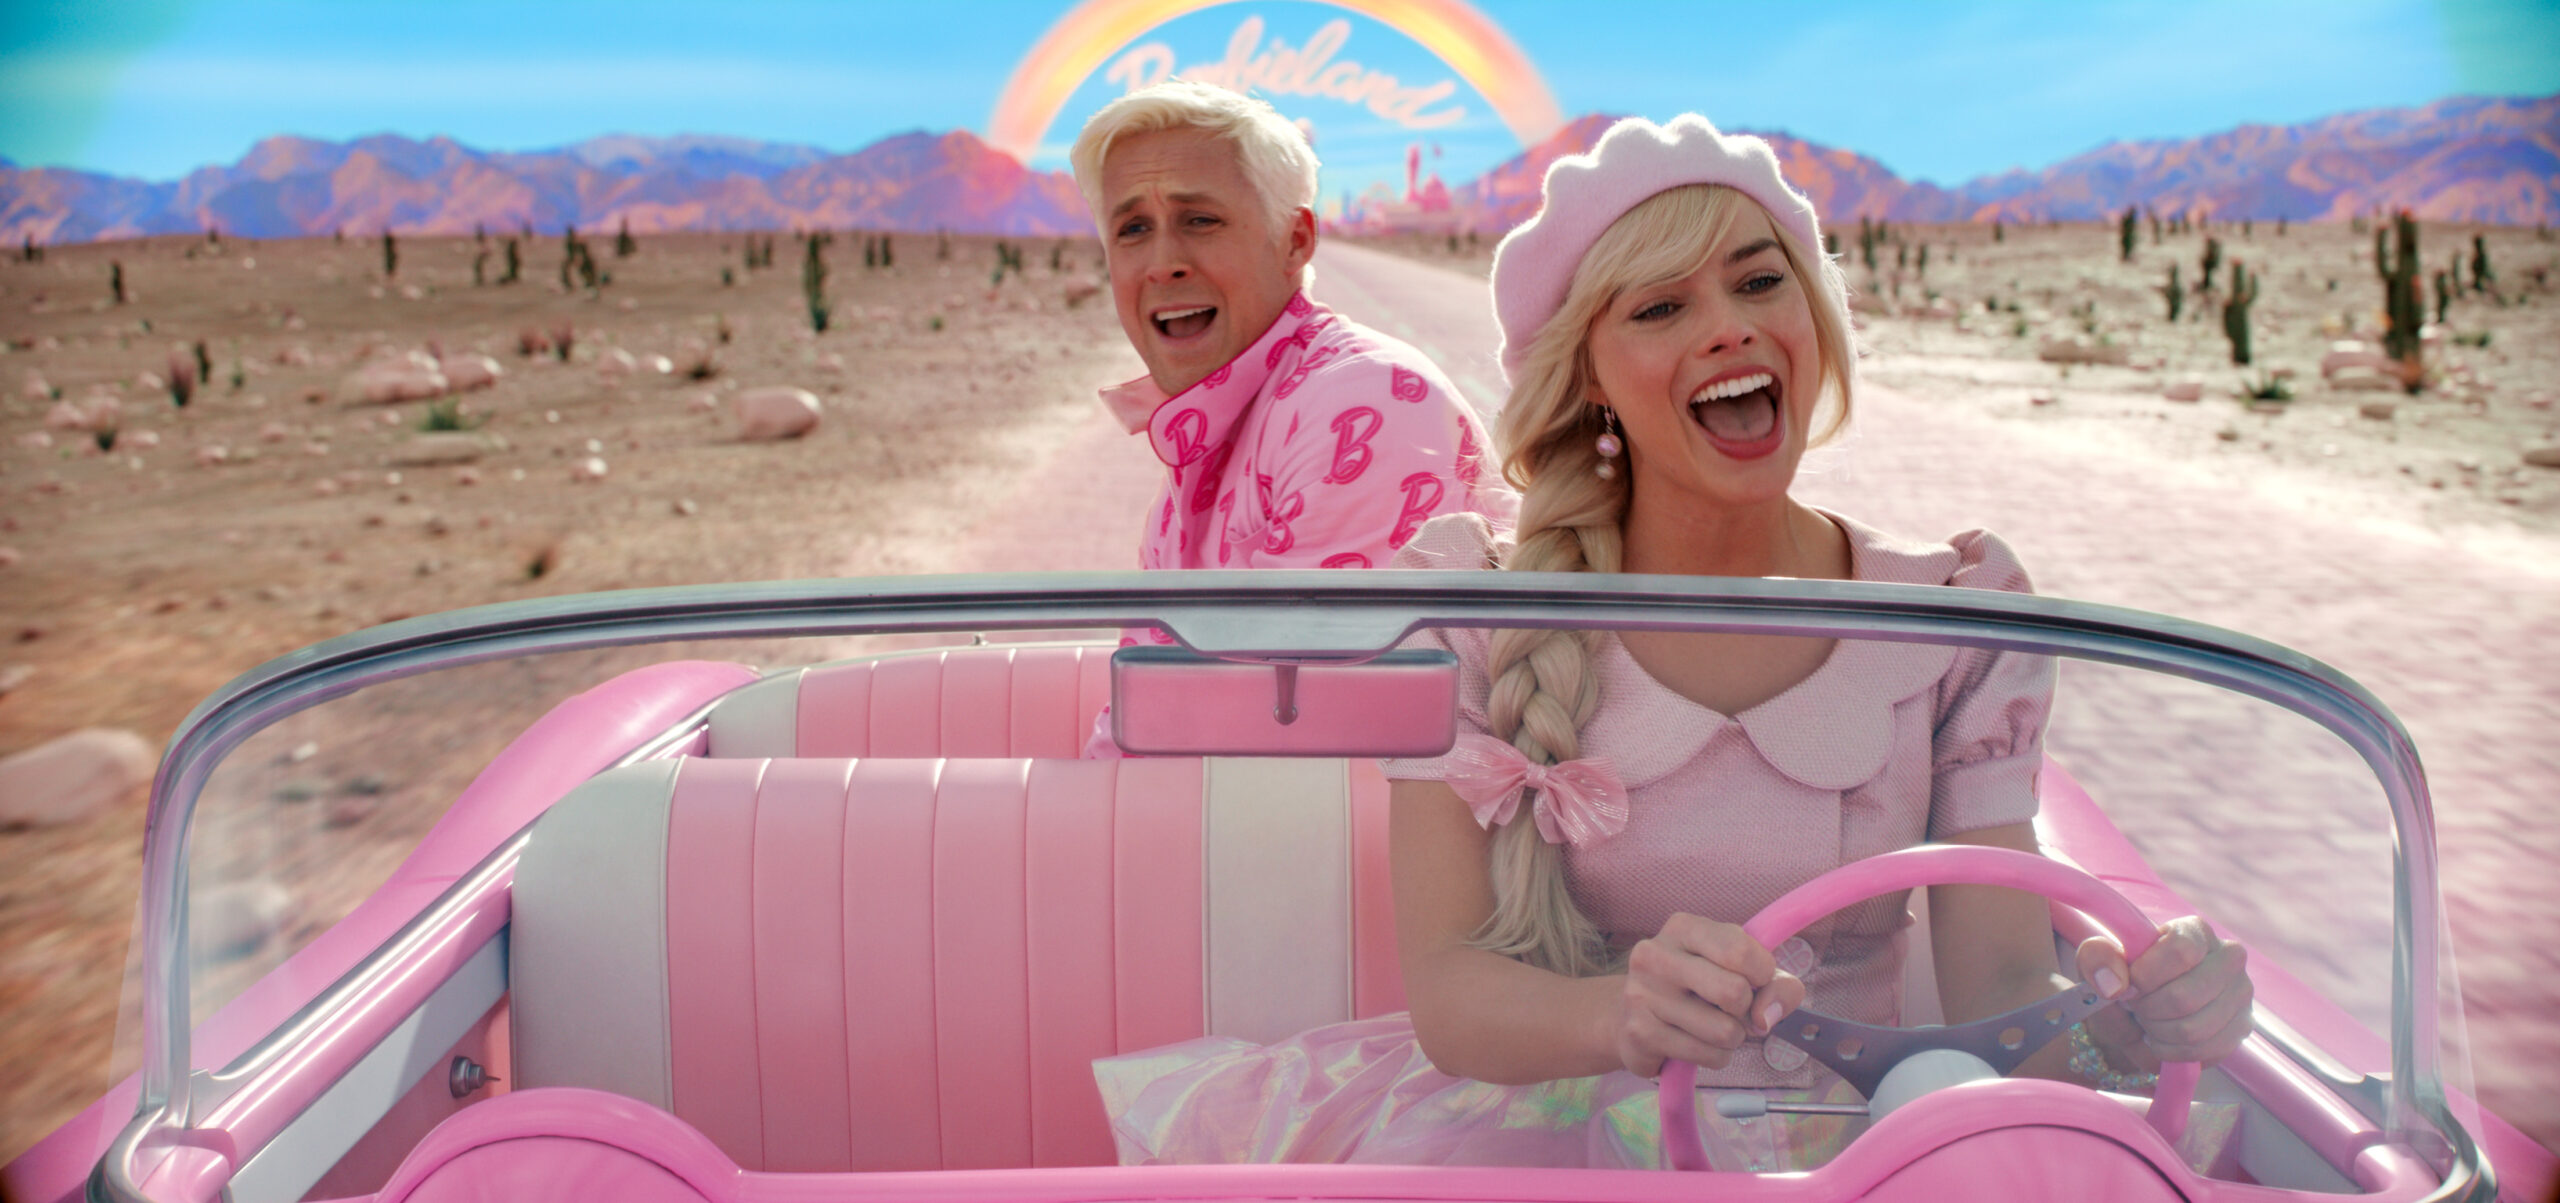 Ryan Gosling als Ken und Margot Robbie als Barbie in einer Szene der Films "Barbie" (undatierte Filmszene).